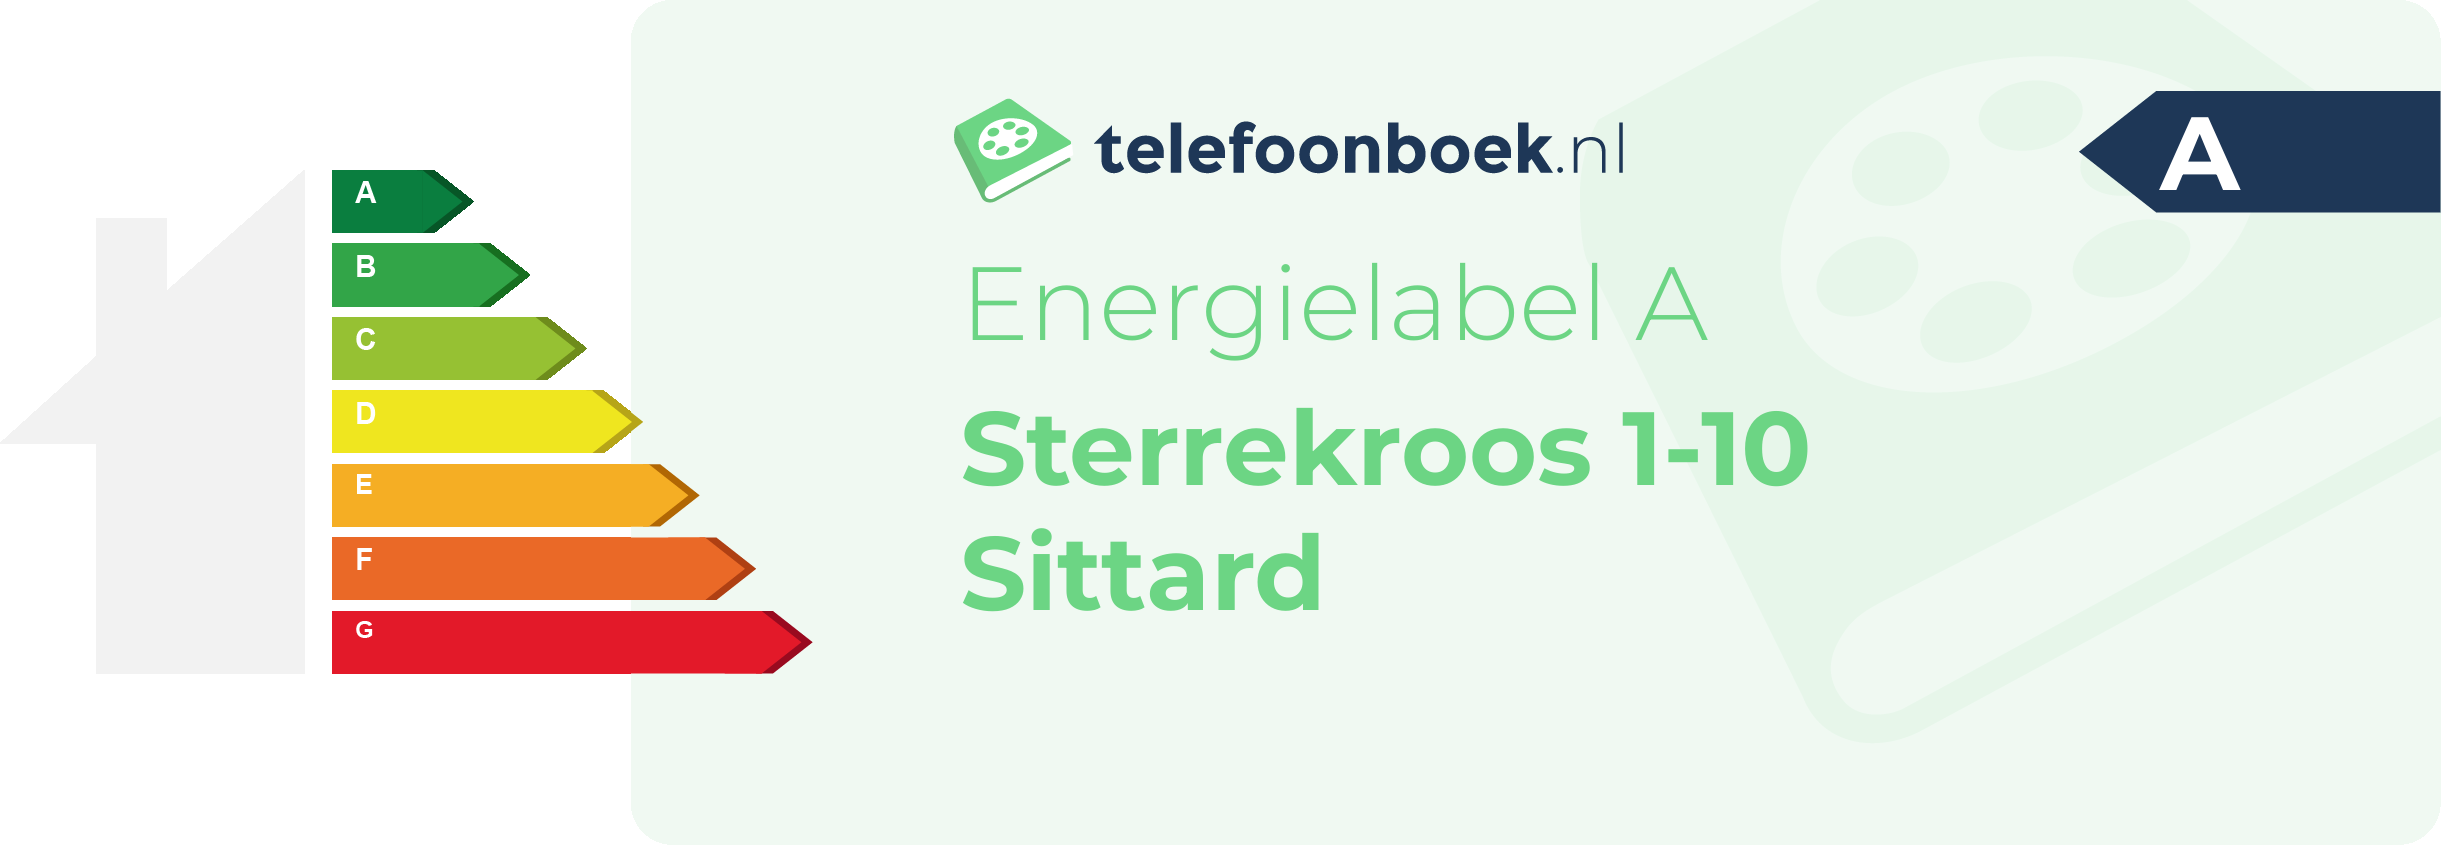 Energielabel Sterrekroos 1-10 Sittard